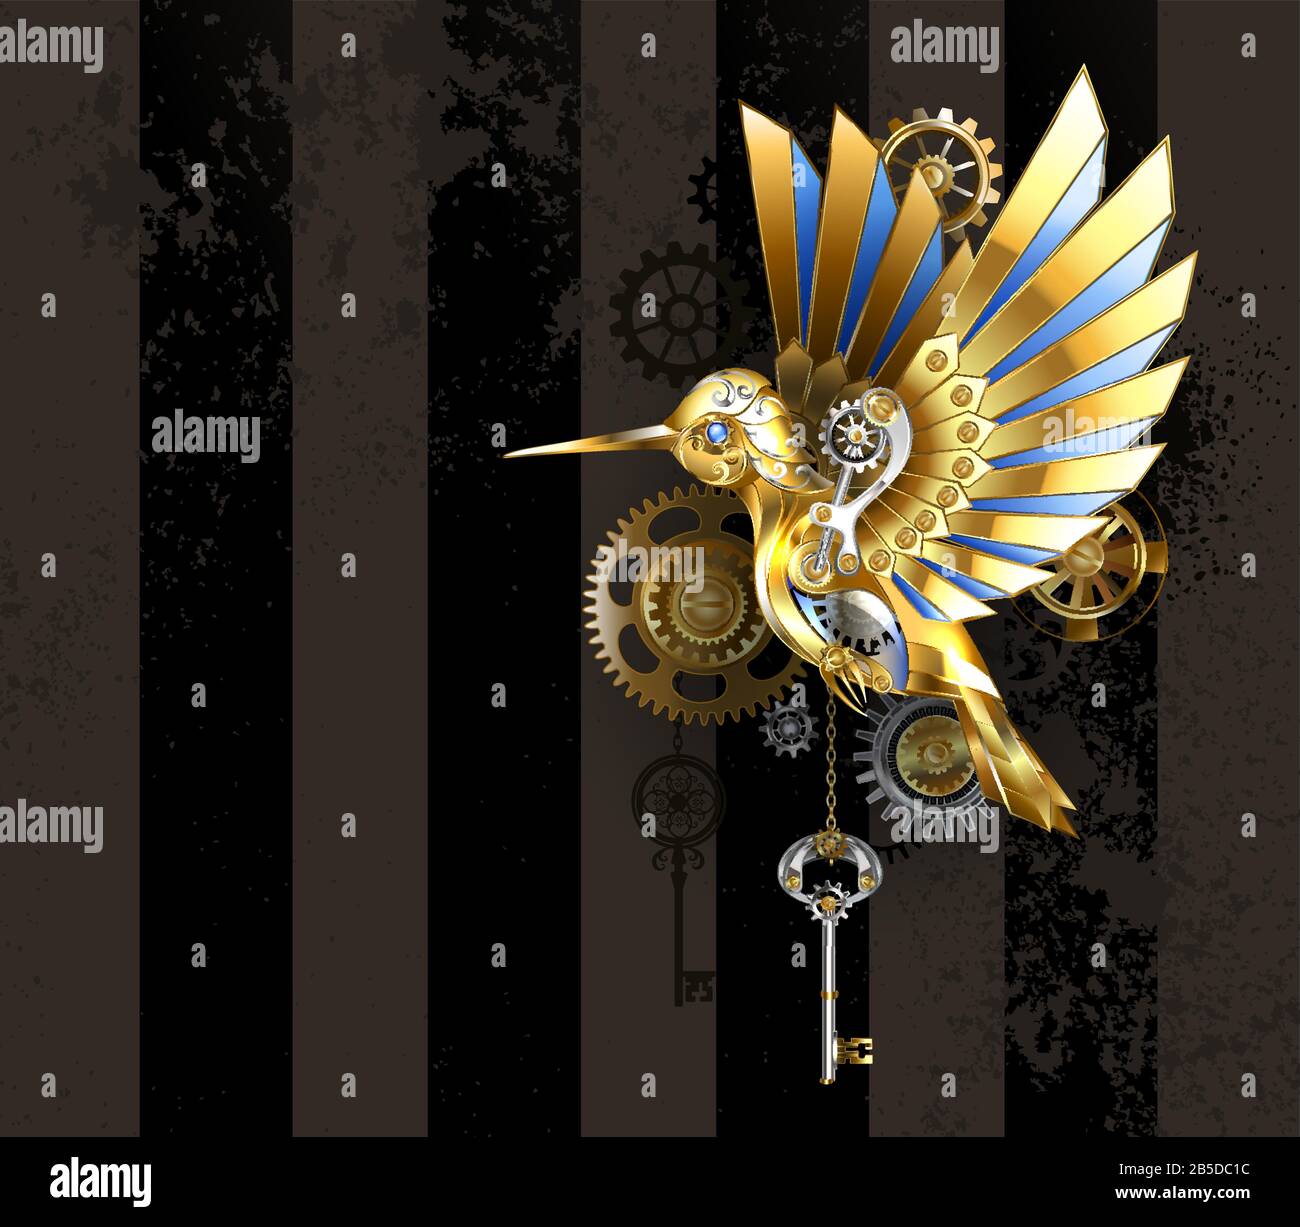 Steampunk, ancien, doré, colibri mécanique avec engrenages en laiton et clé en argent sur fond rayé et marron. Oiseau d'or. Illustration de Vecteur